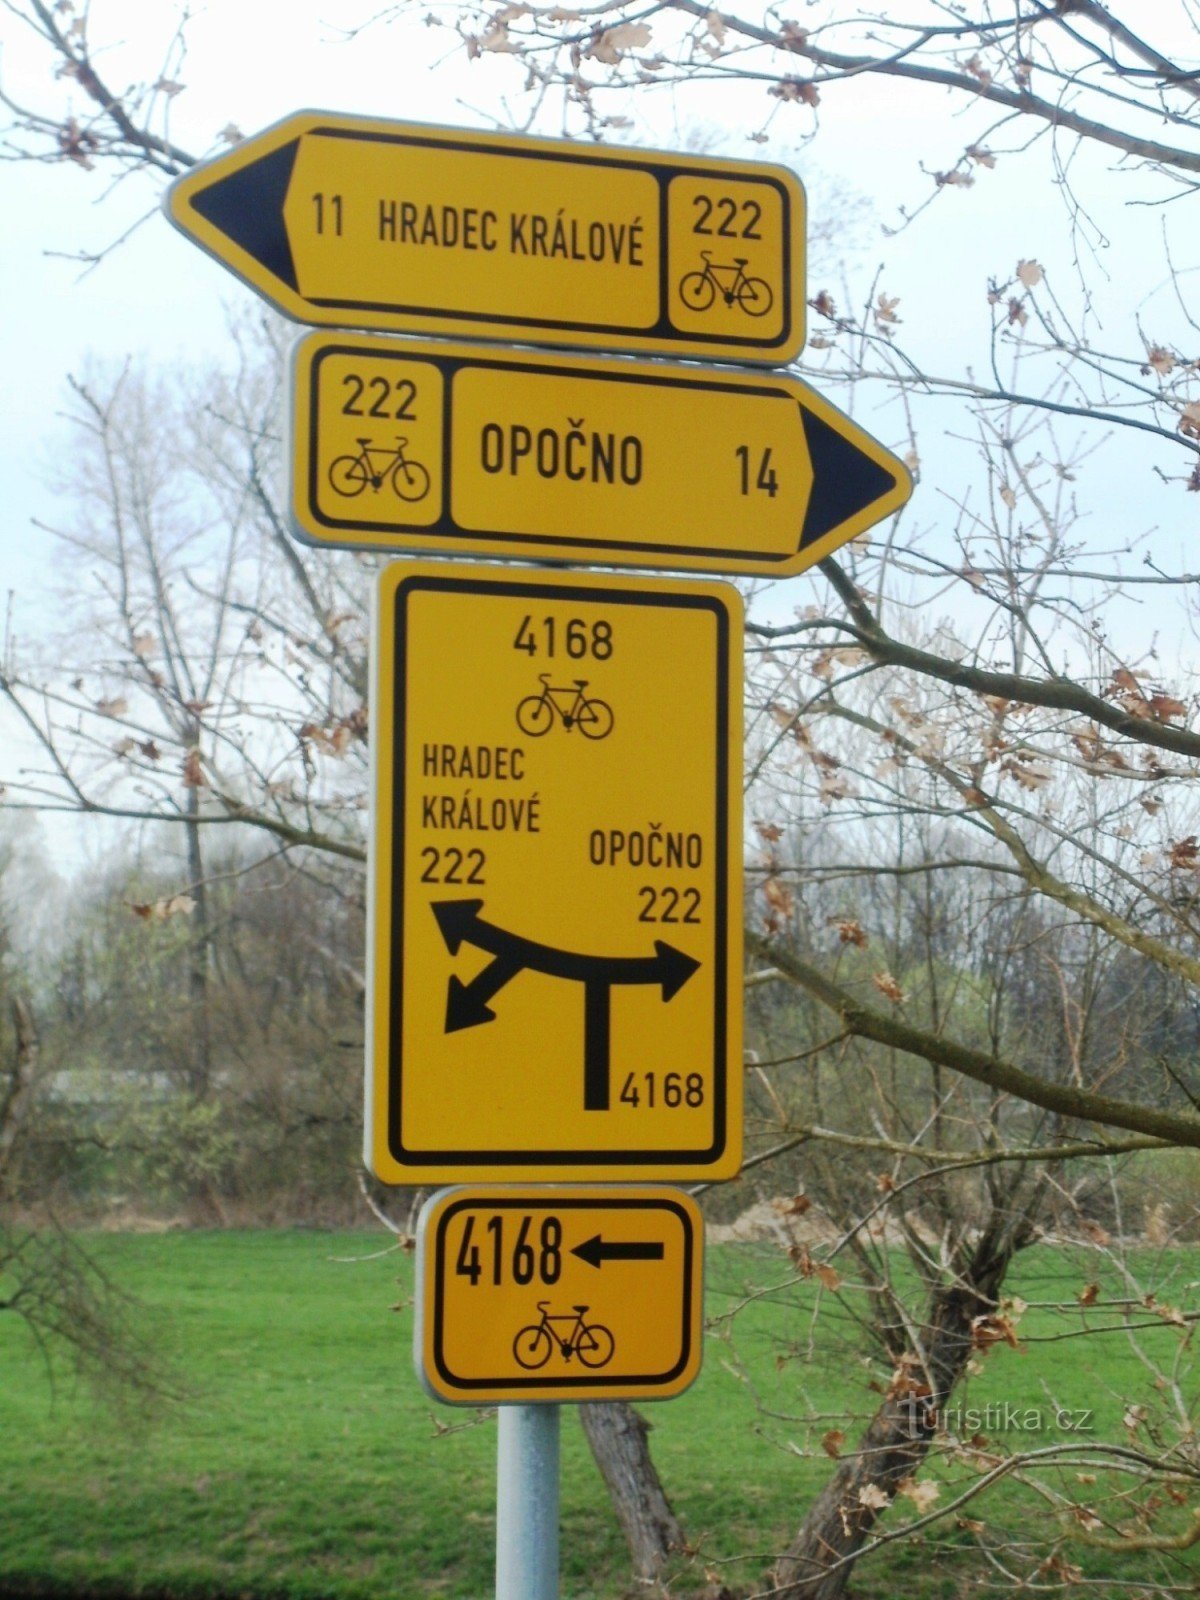 sinalização de cicloturismo Krňovice perto do museu ao ar livre